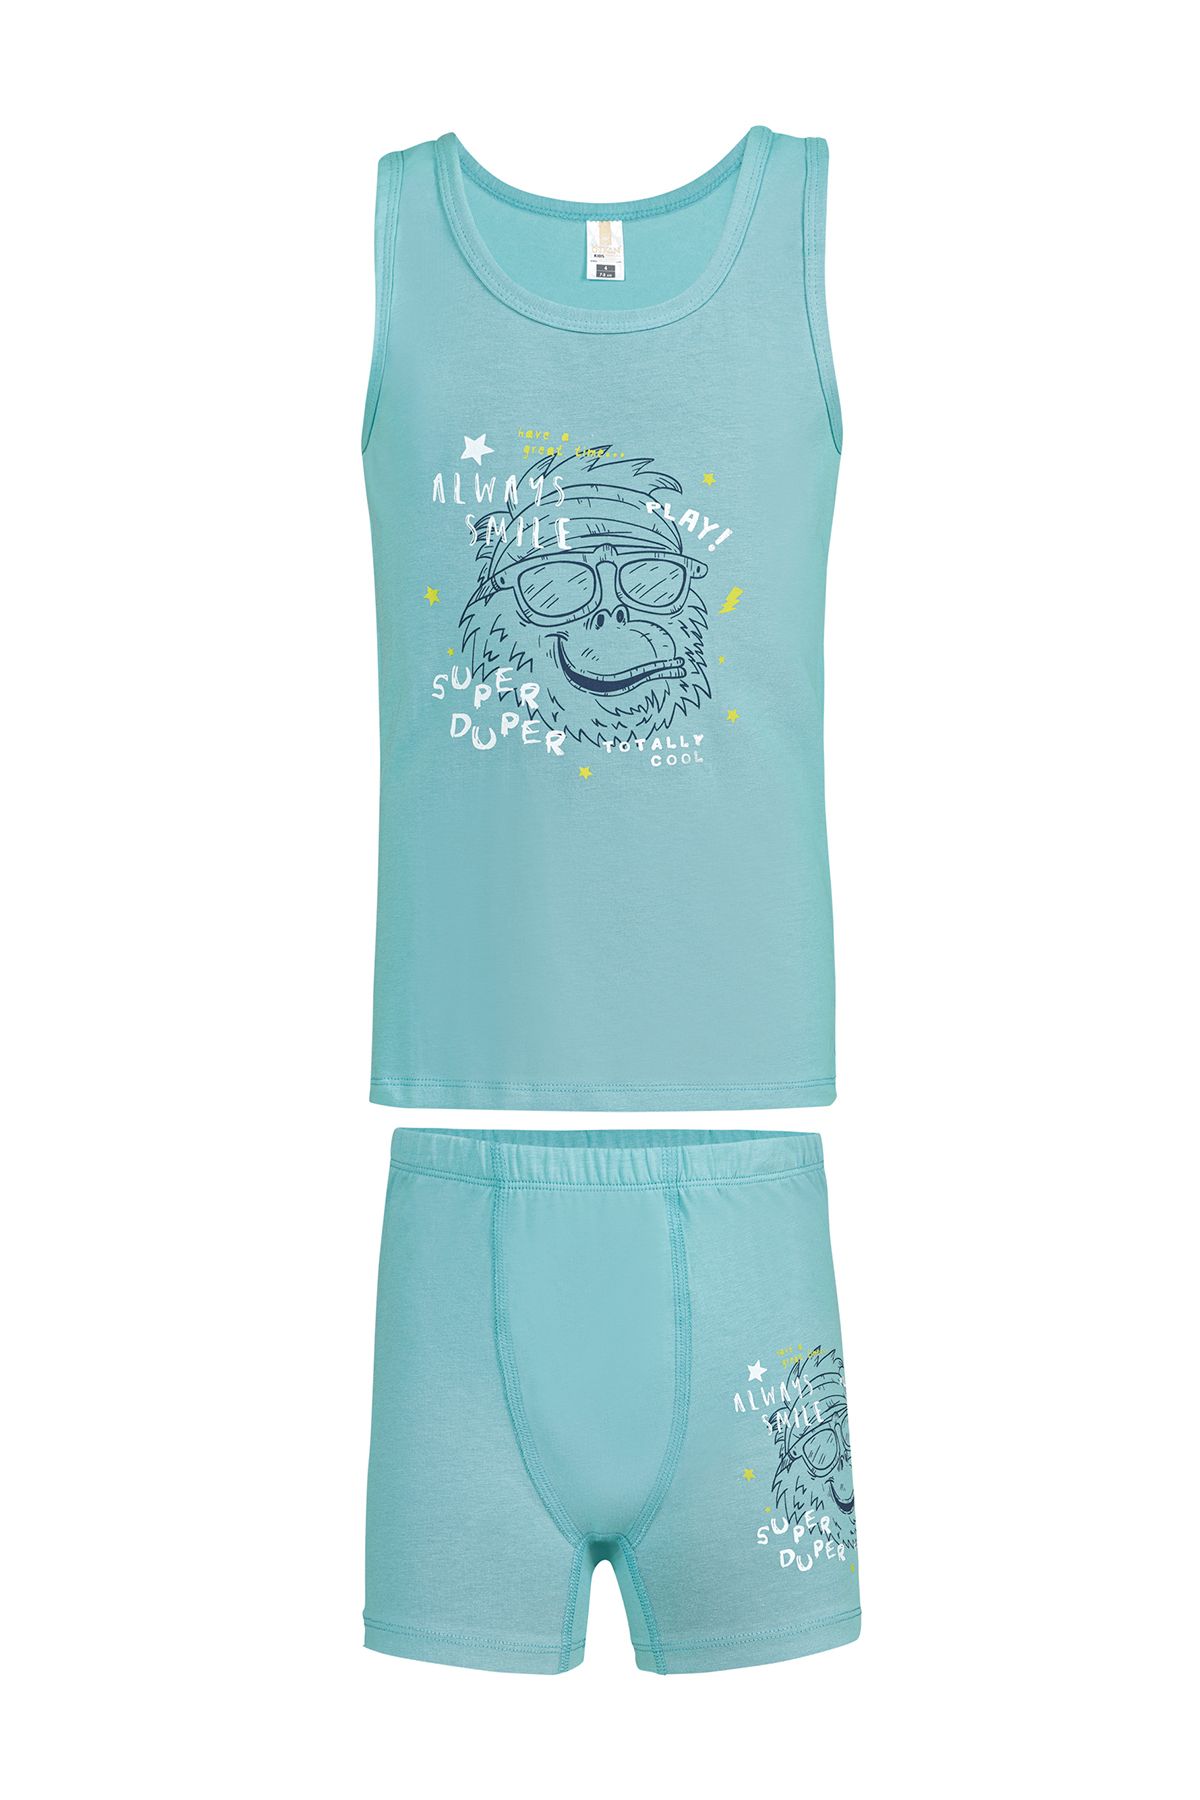 ÖZKAN underwear Özkan 32041 Erkek Çocuk Pamuklu Yeşil Kalın Askılı Atlet Şort İç Giyim Takım